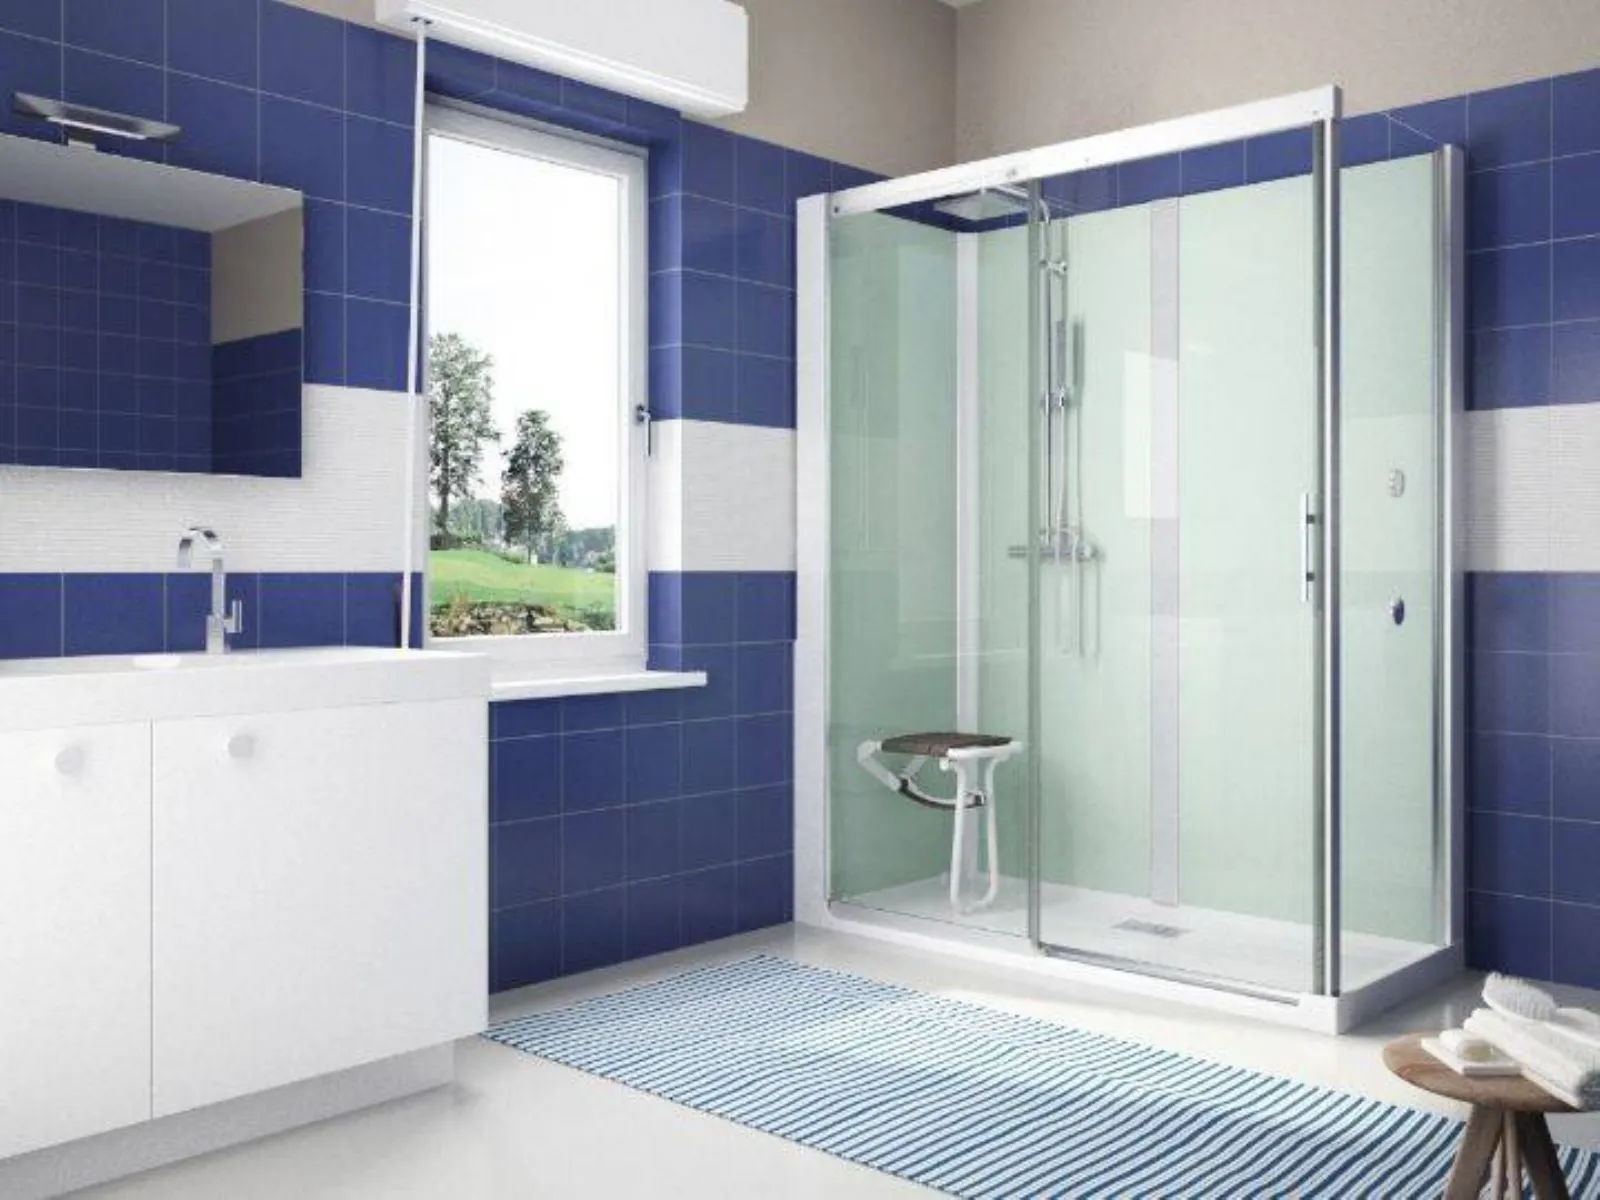 5 motivi per sostituire la vasca da bagno con la doccia